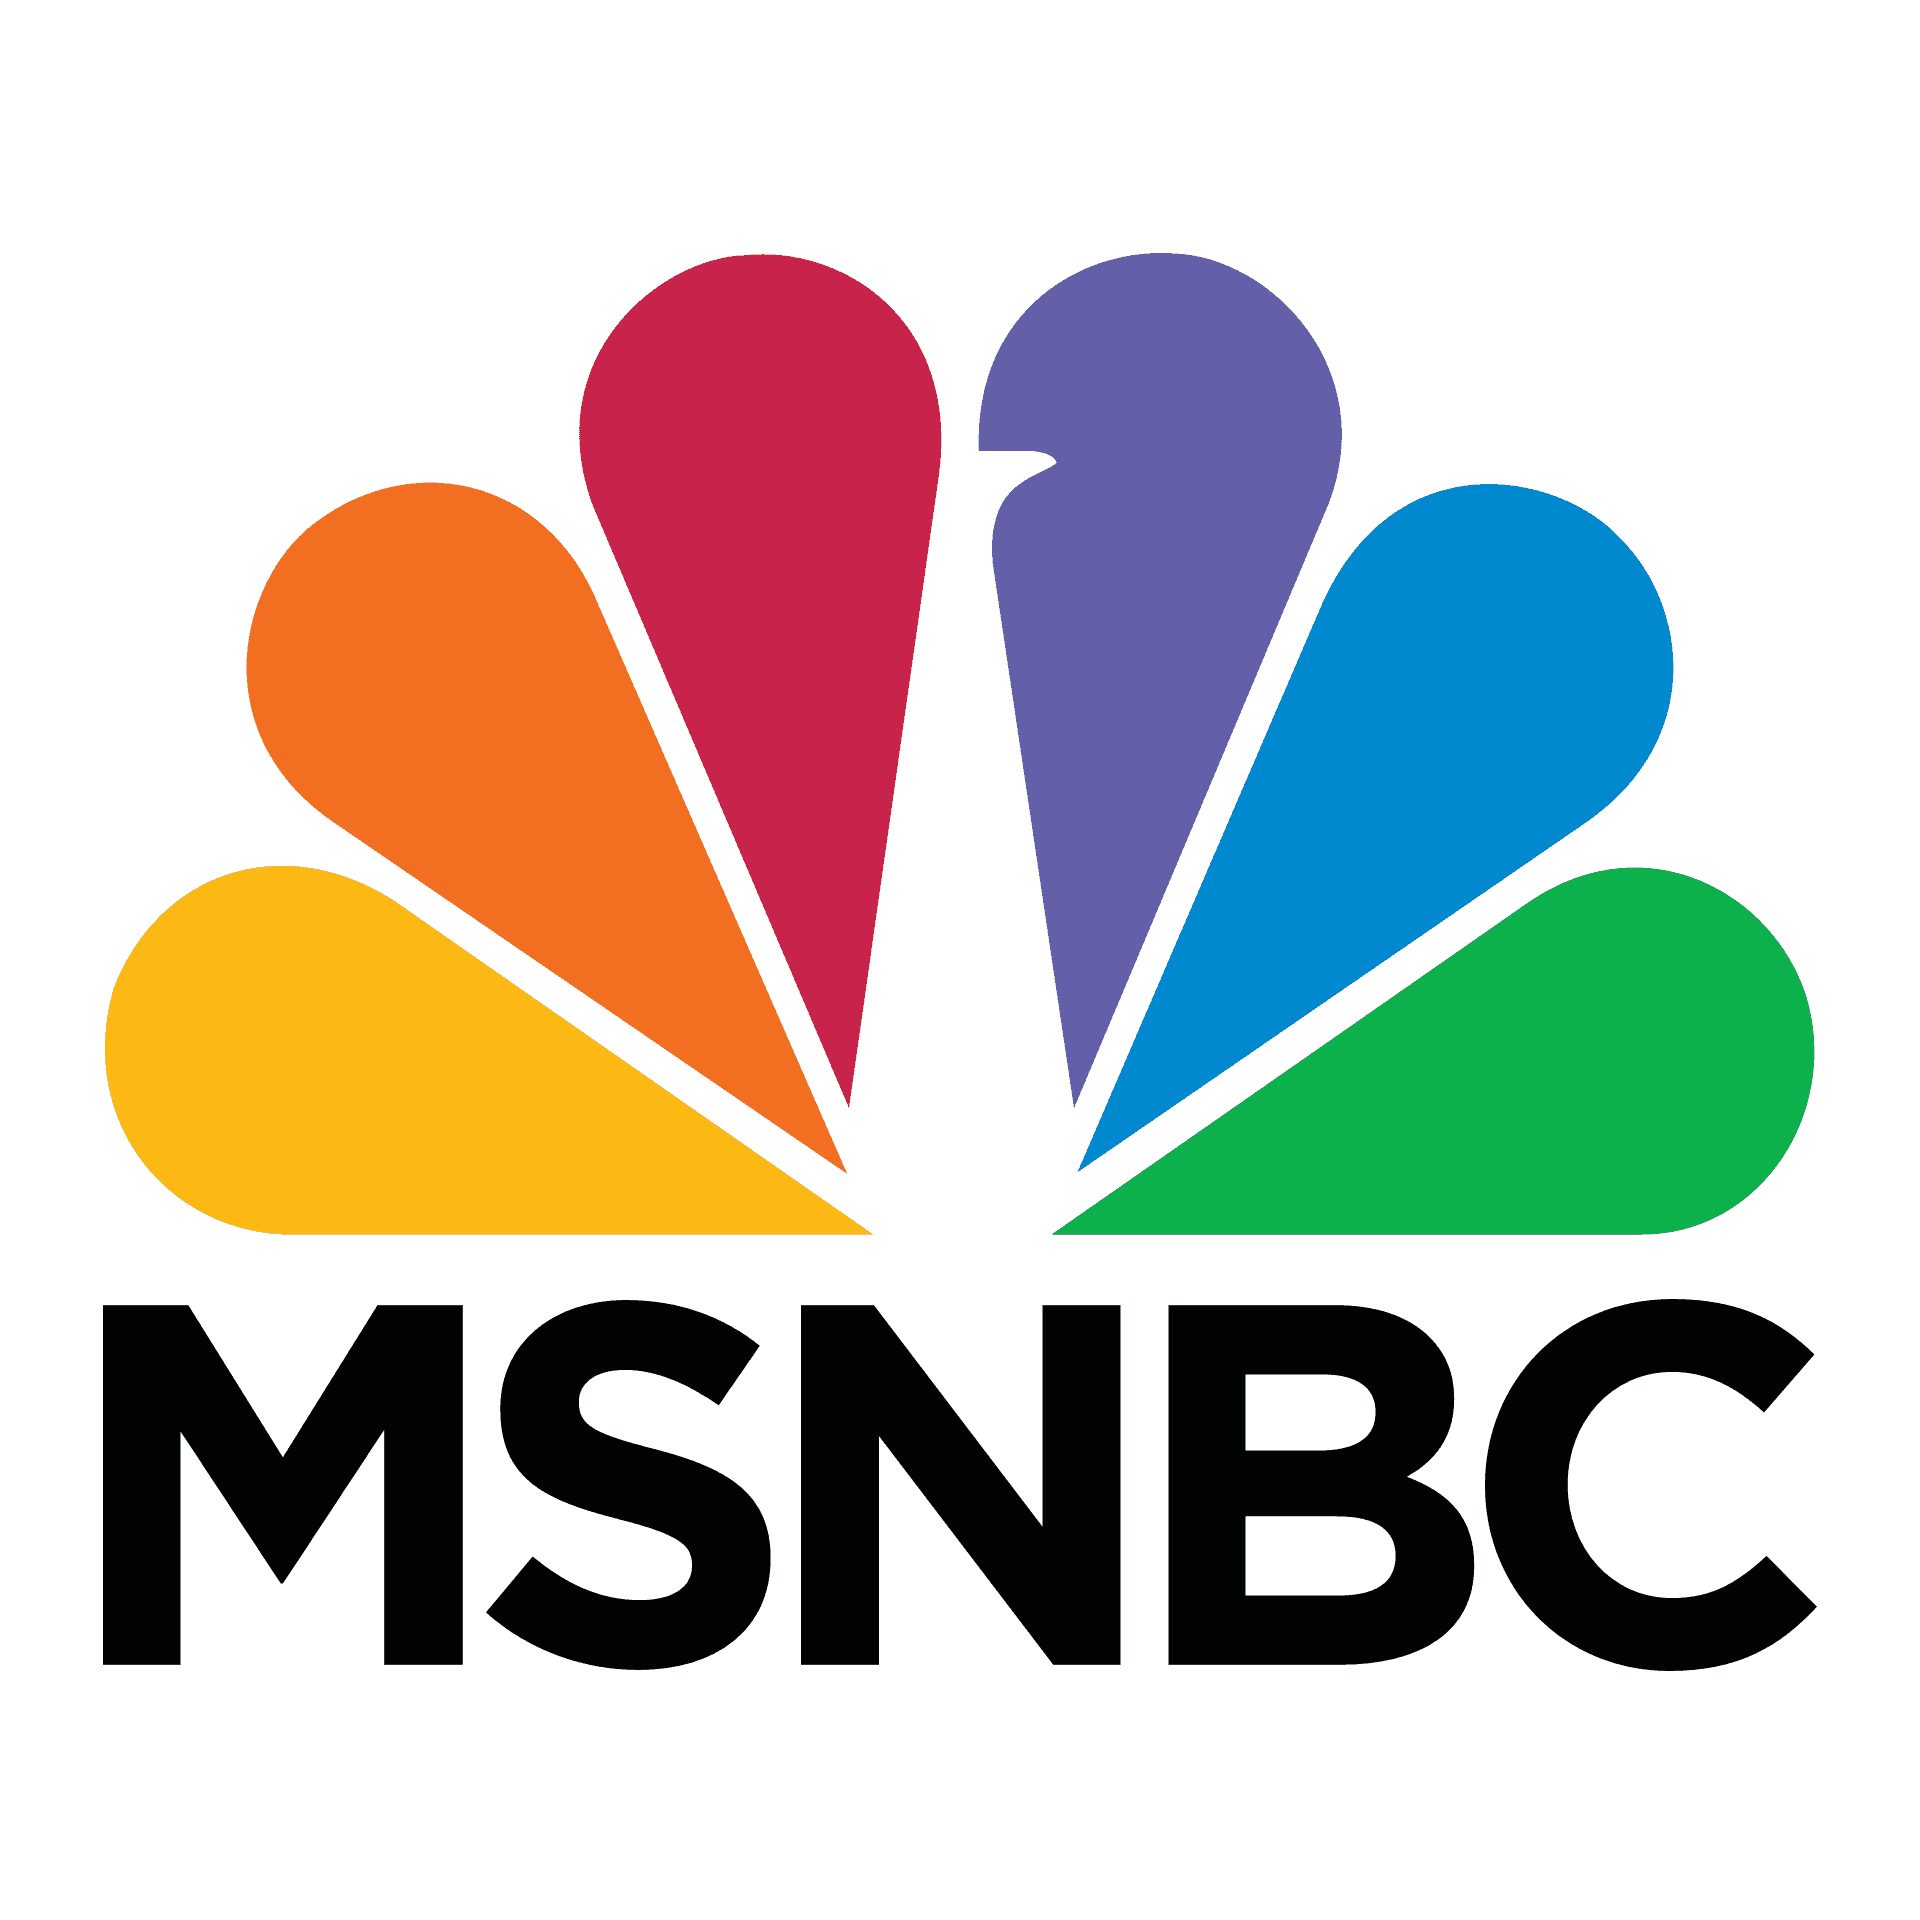 msnbc-logo-png-1920.2301271014550